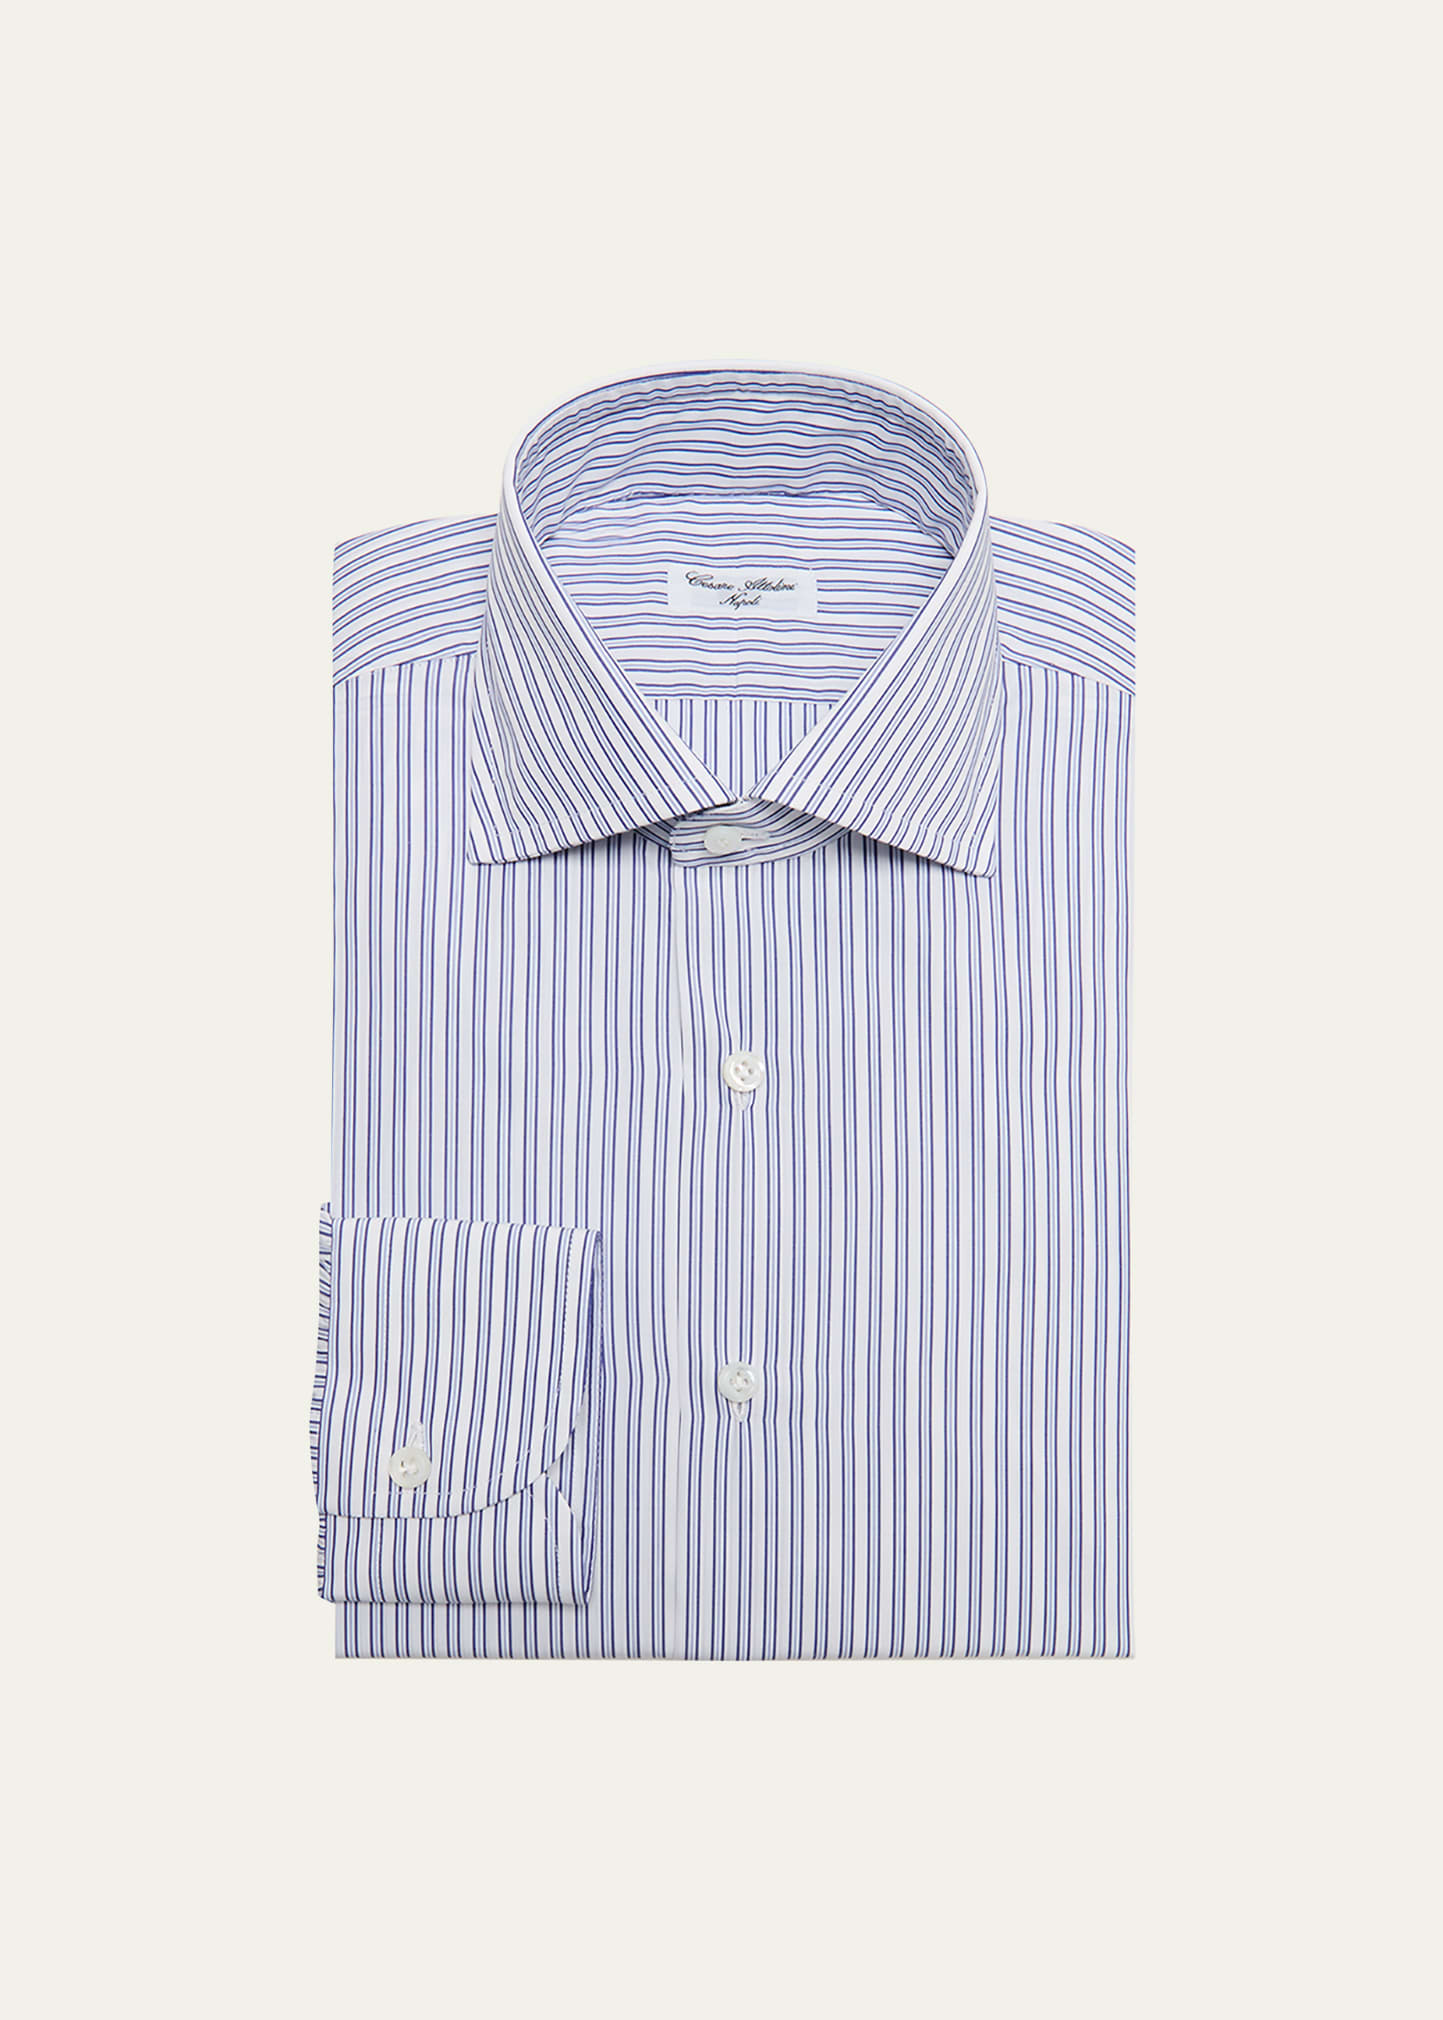 Men's Cotton Stripe Dress Shirt